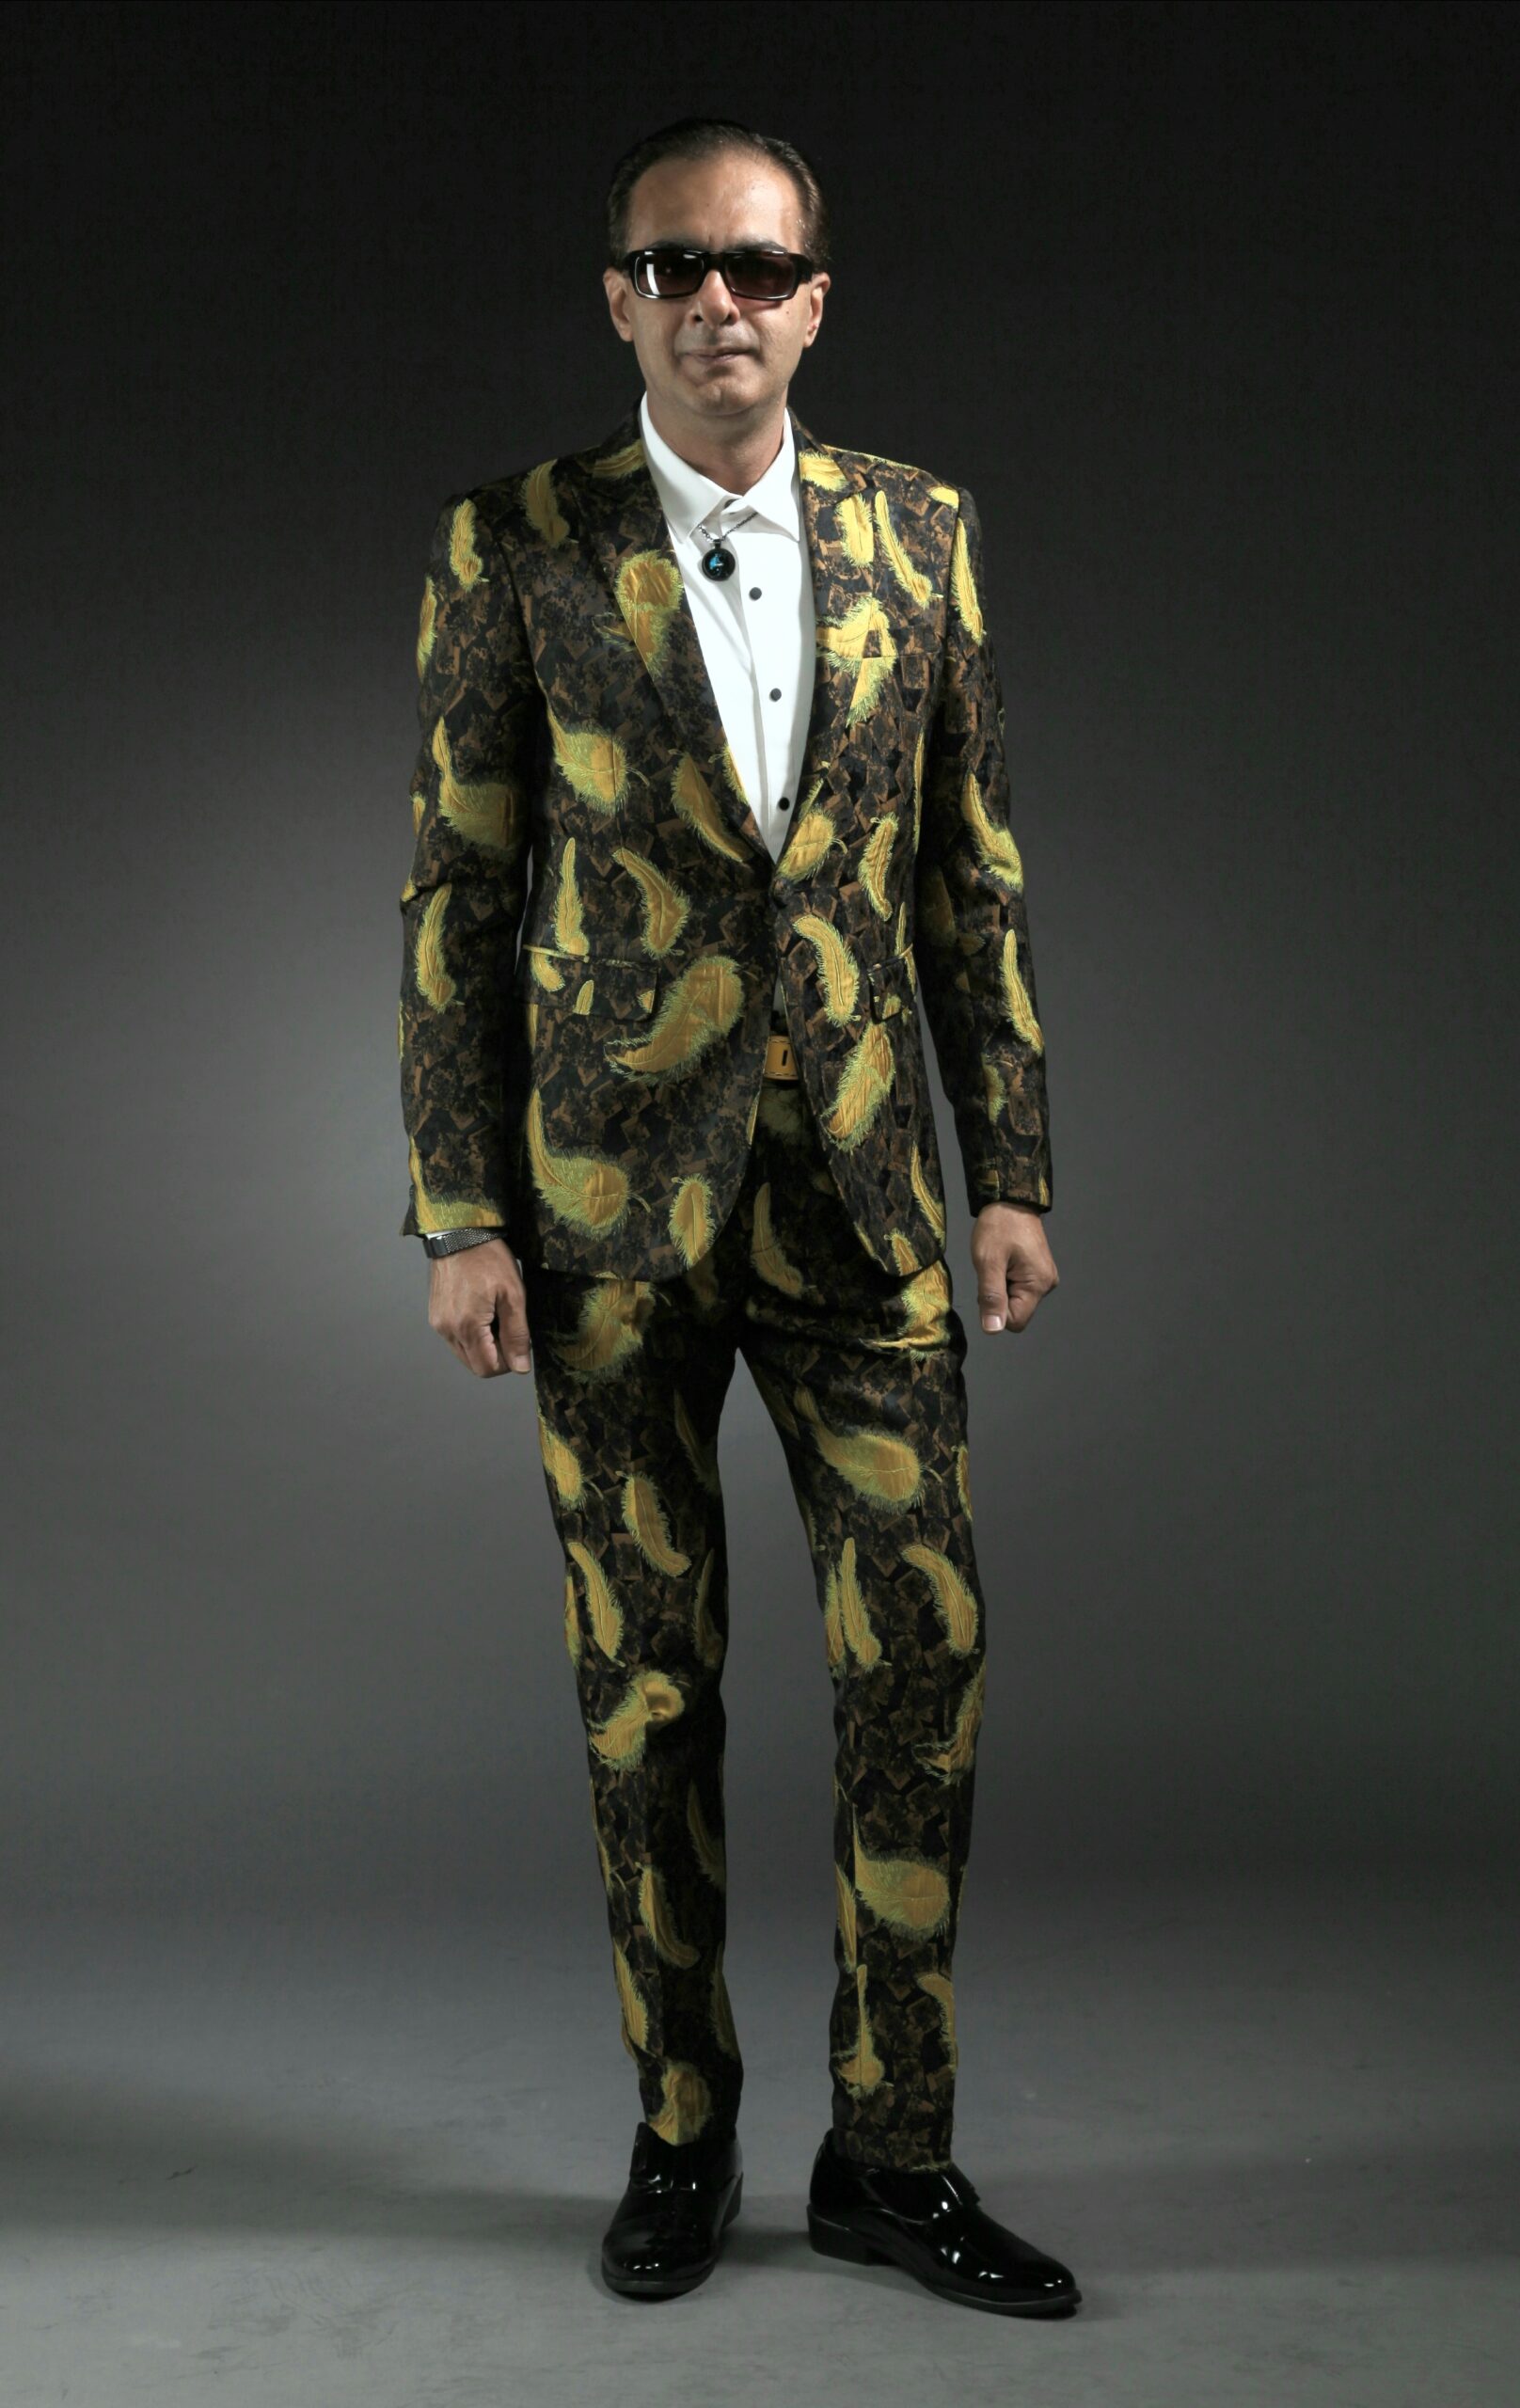 Mst 5016 03 Rent Rental Hire Tuxedo Suit Black Tie Suit Designer Suits Shop Tailor Tailors Singapore Wedding